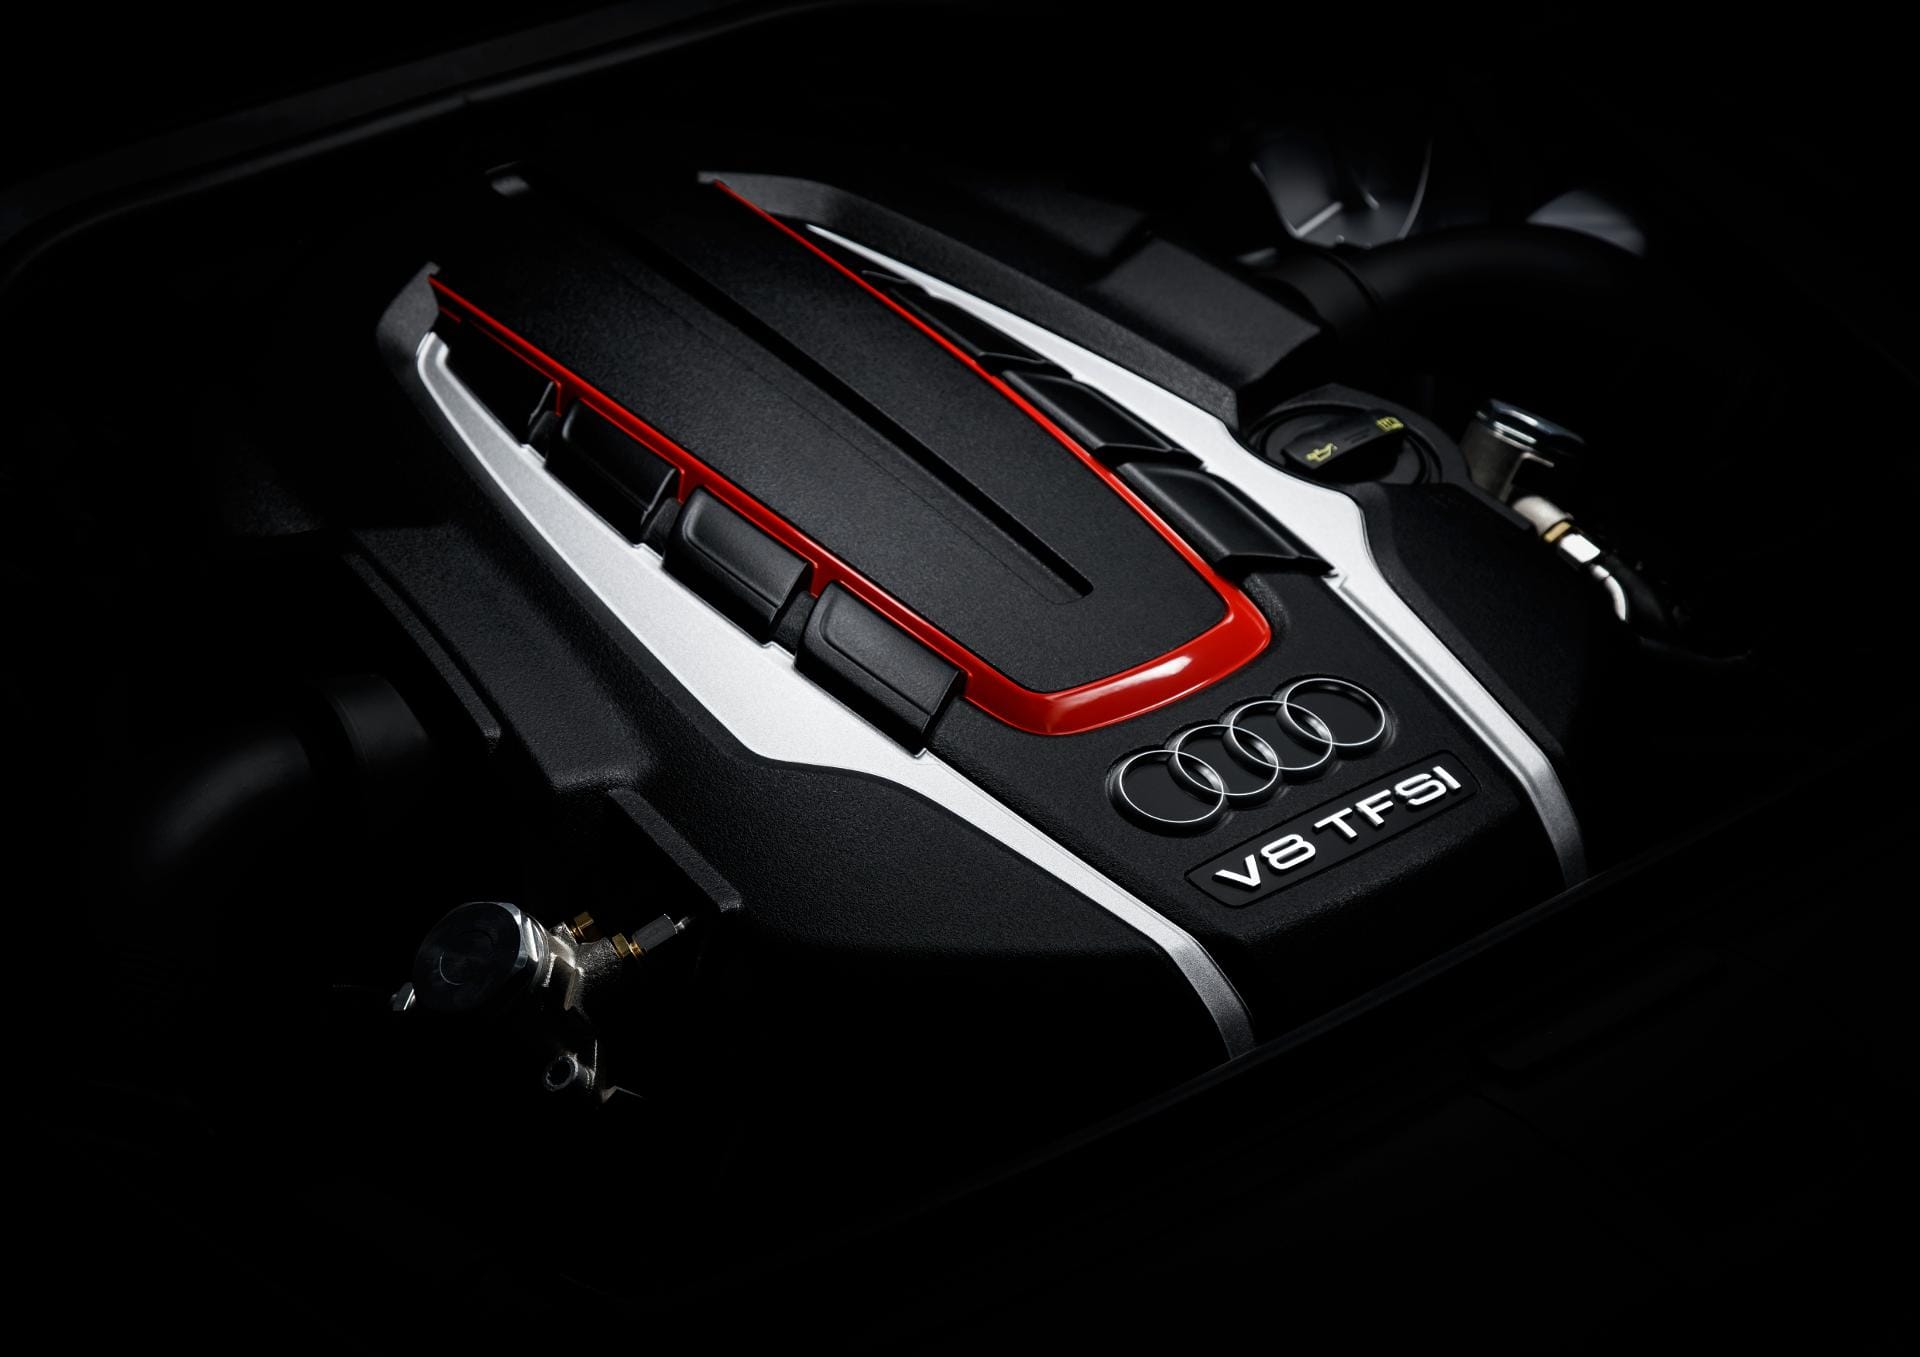 Mit einer Leistung von 605 PS ist der Audi S8 Plus noch einmal 85 PS stärker als der potente Audi S8. Der 4,0-Liter-V8-Benziner hat ein maximales Drehmoment von bis zu 750 Newtonmetern.